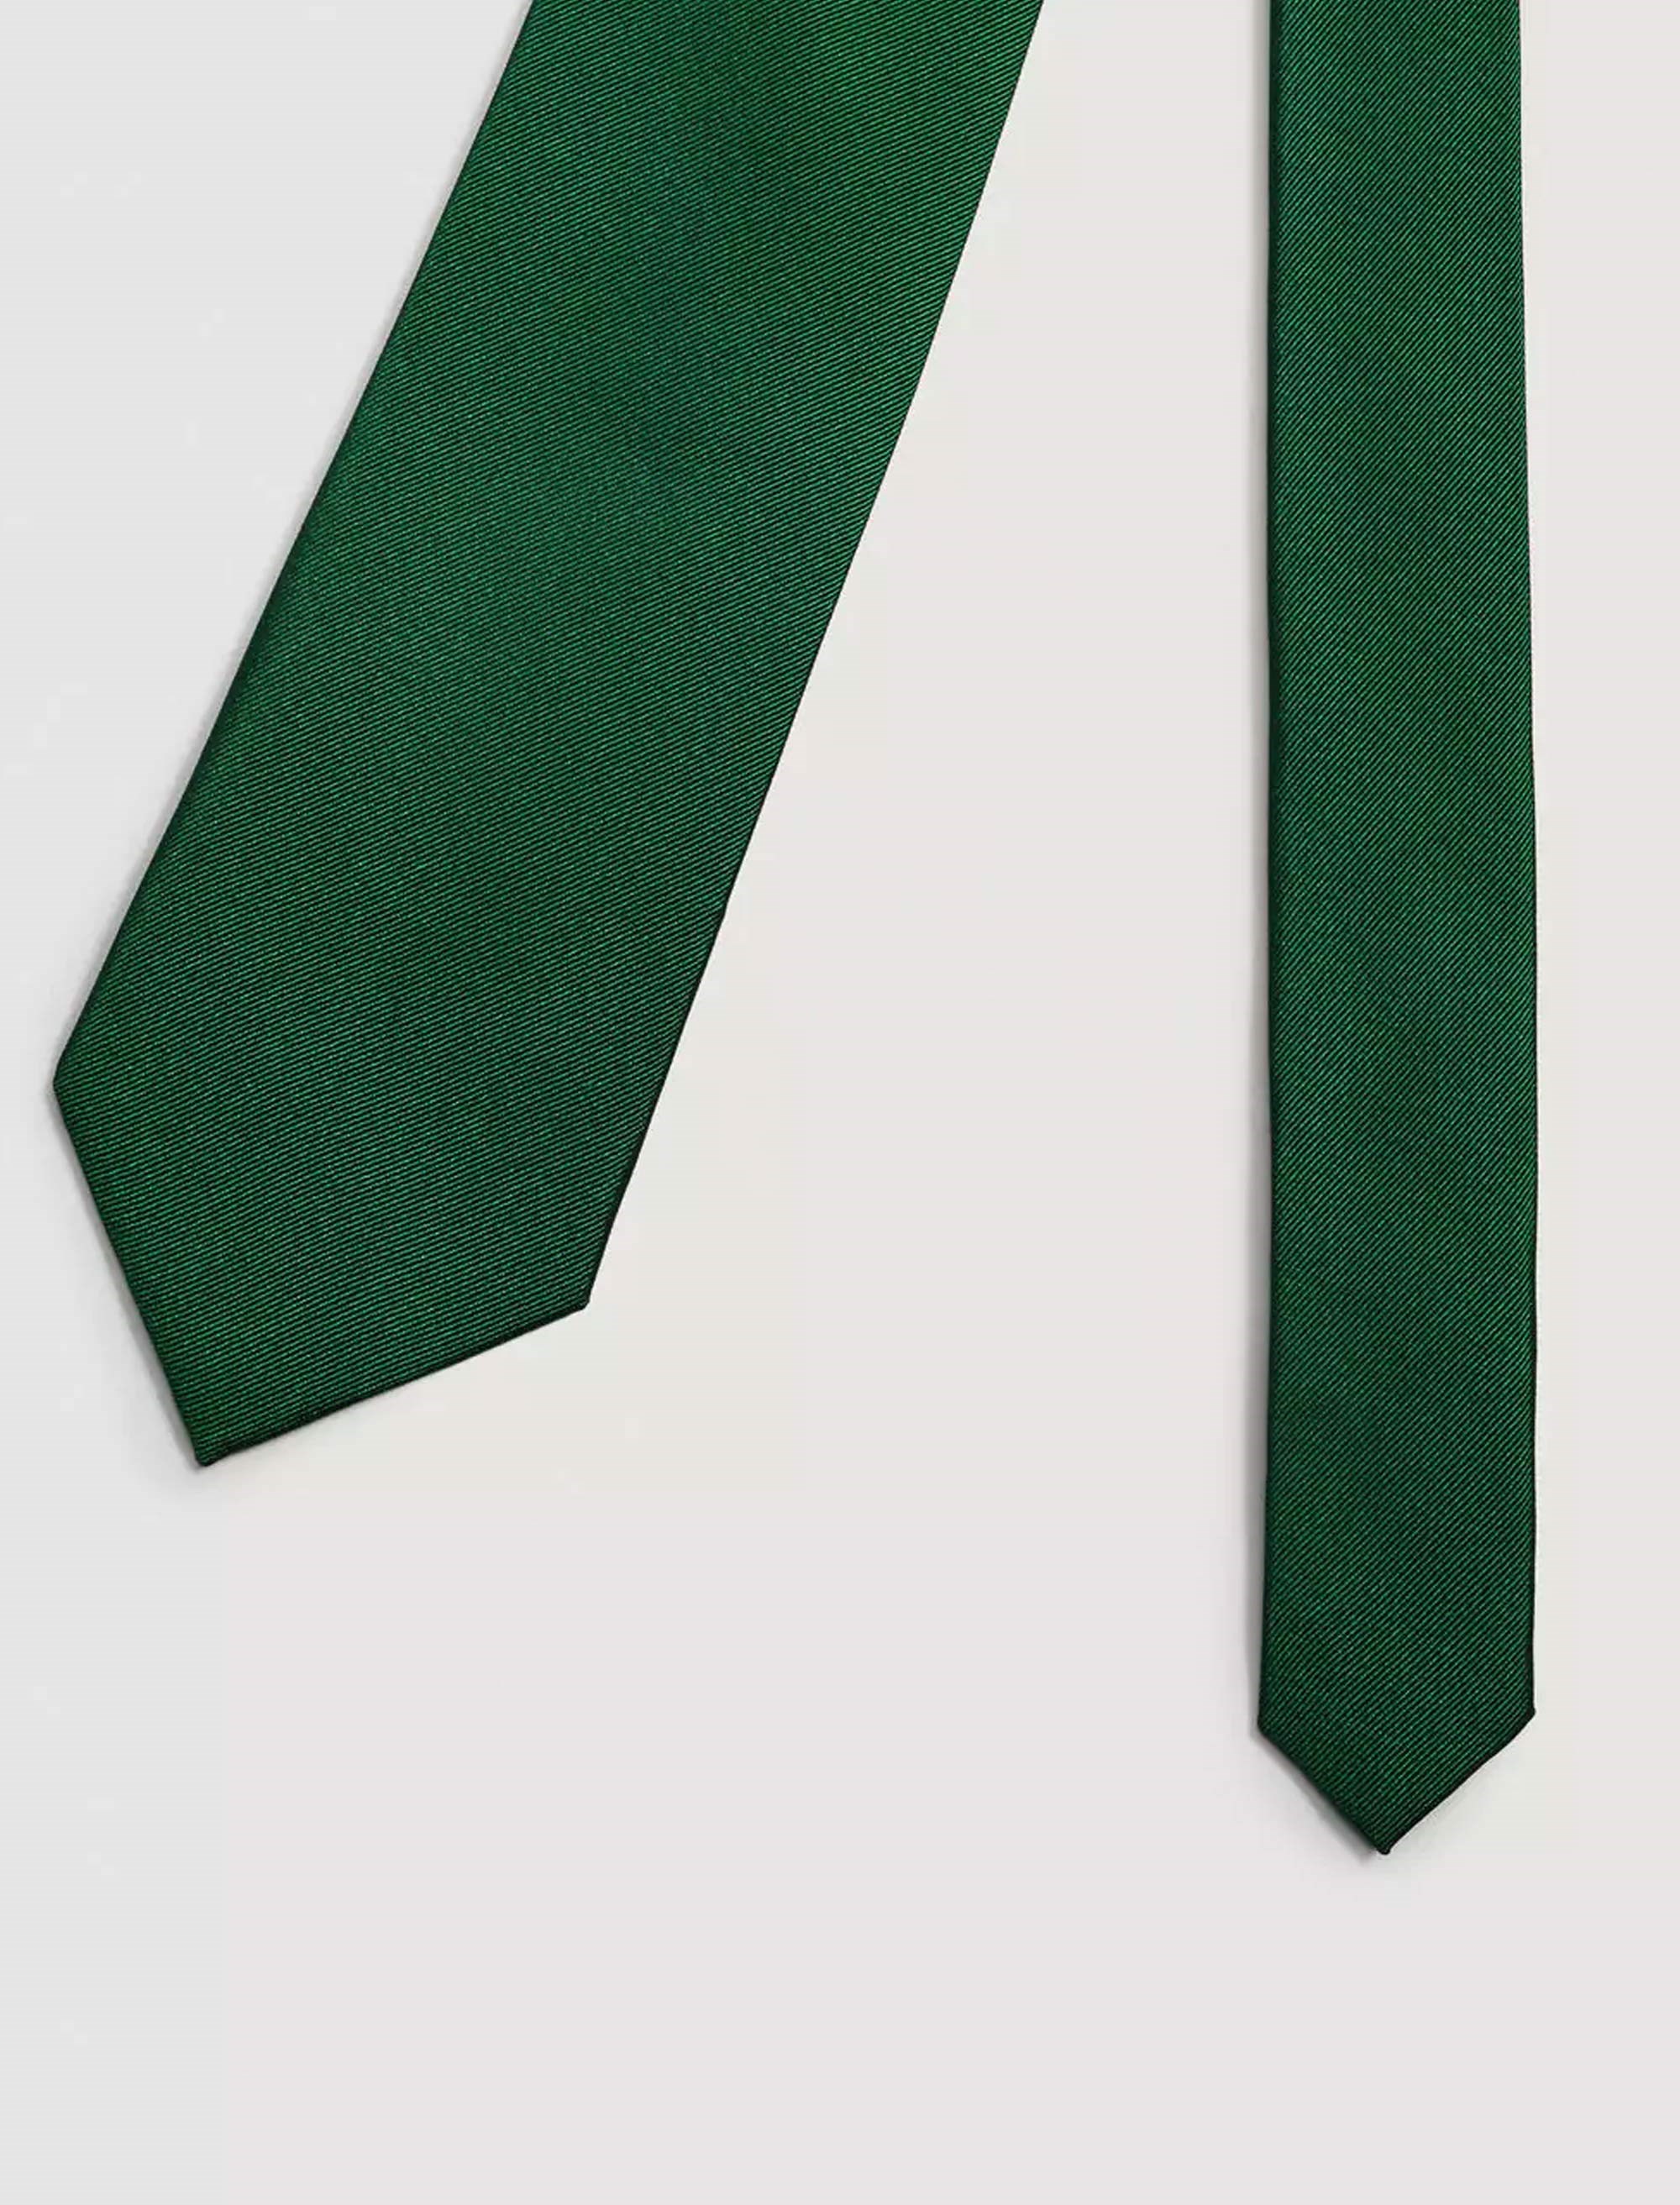 کراوات مانگو مدل 23070660 تک سایز - سبز  - 3